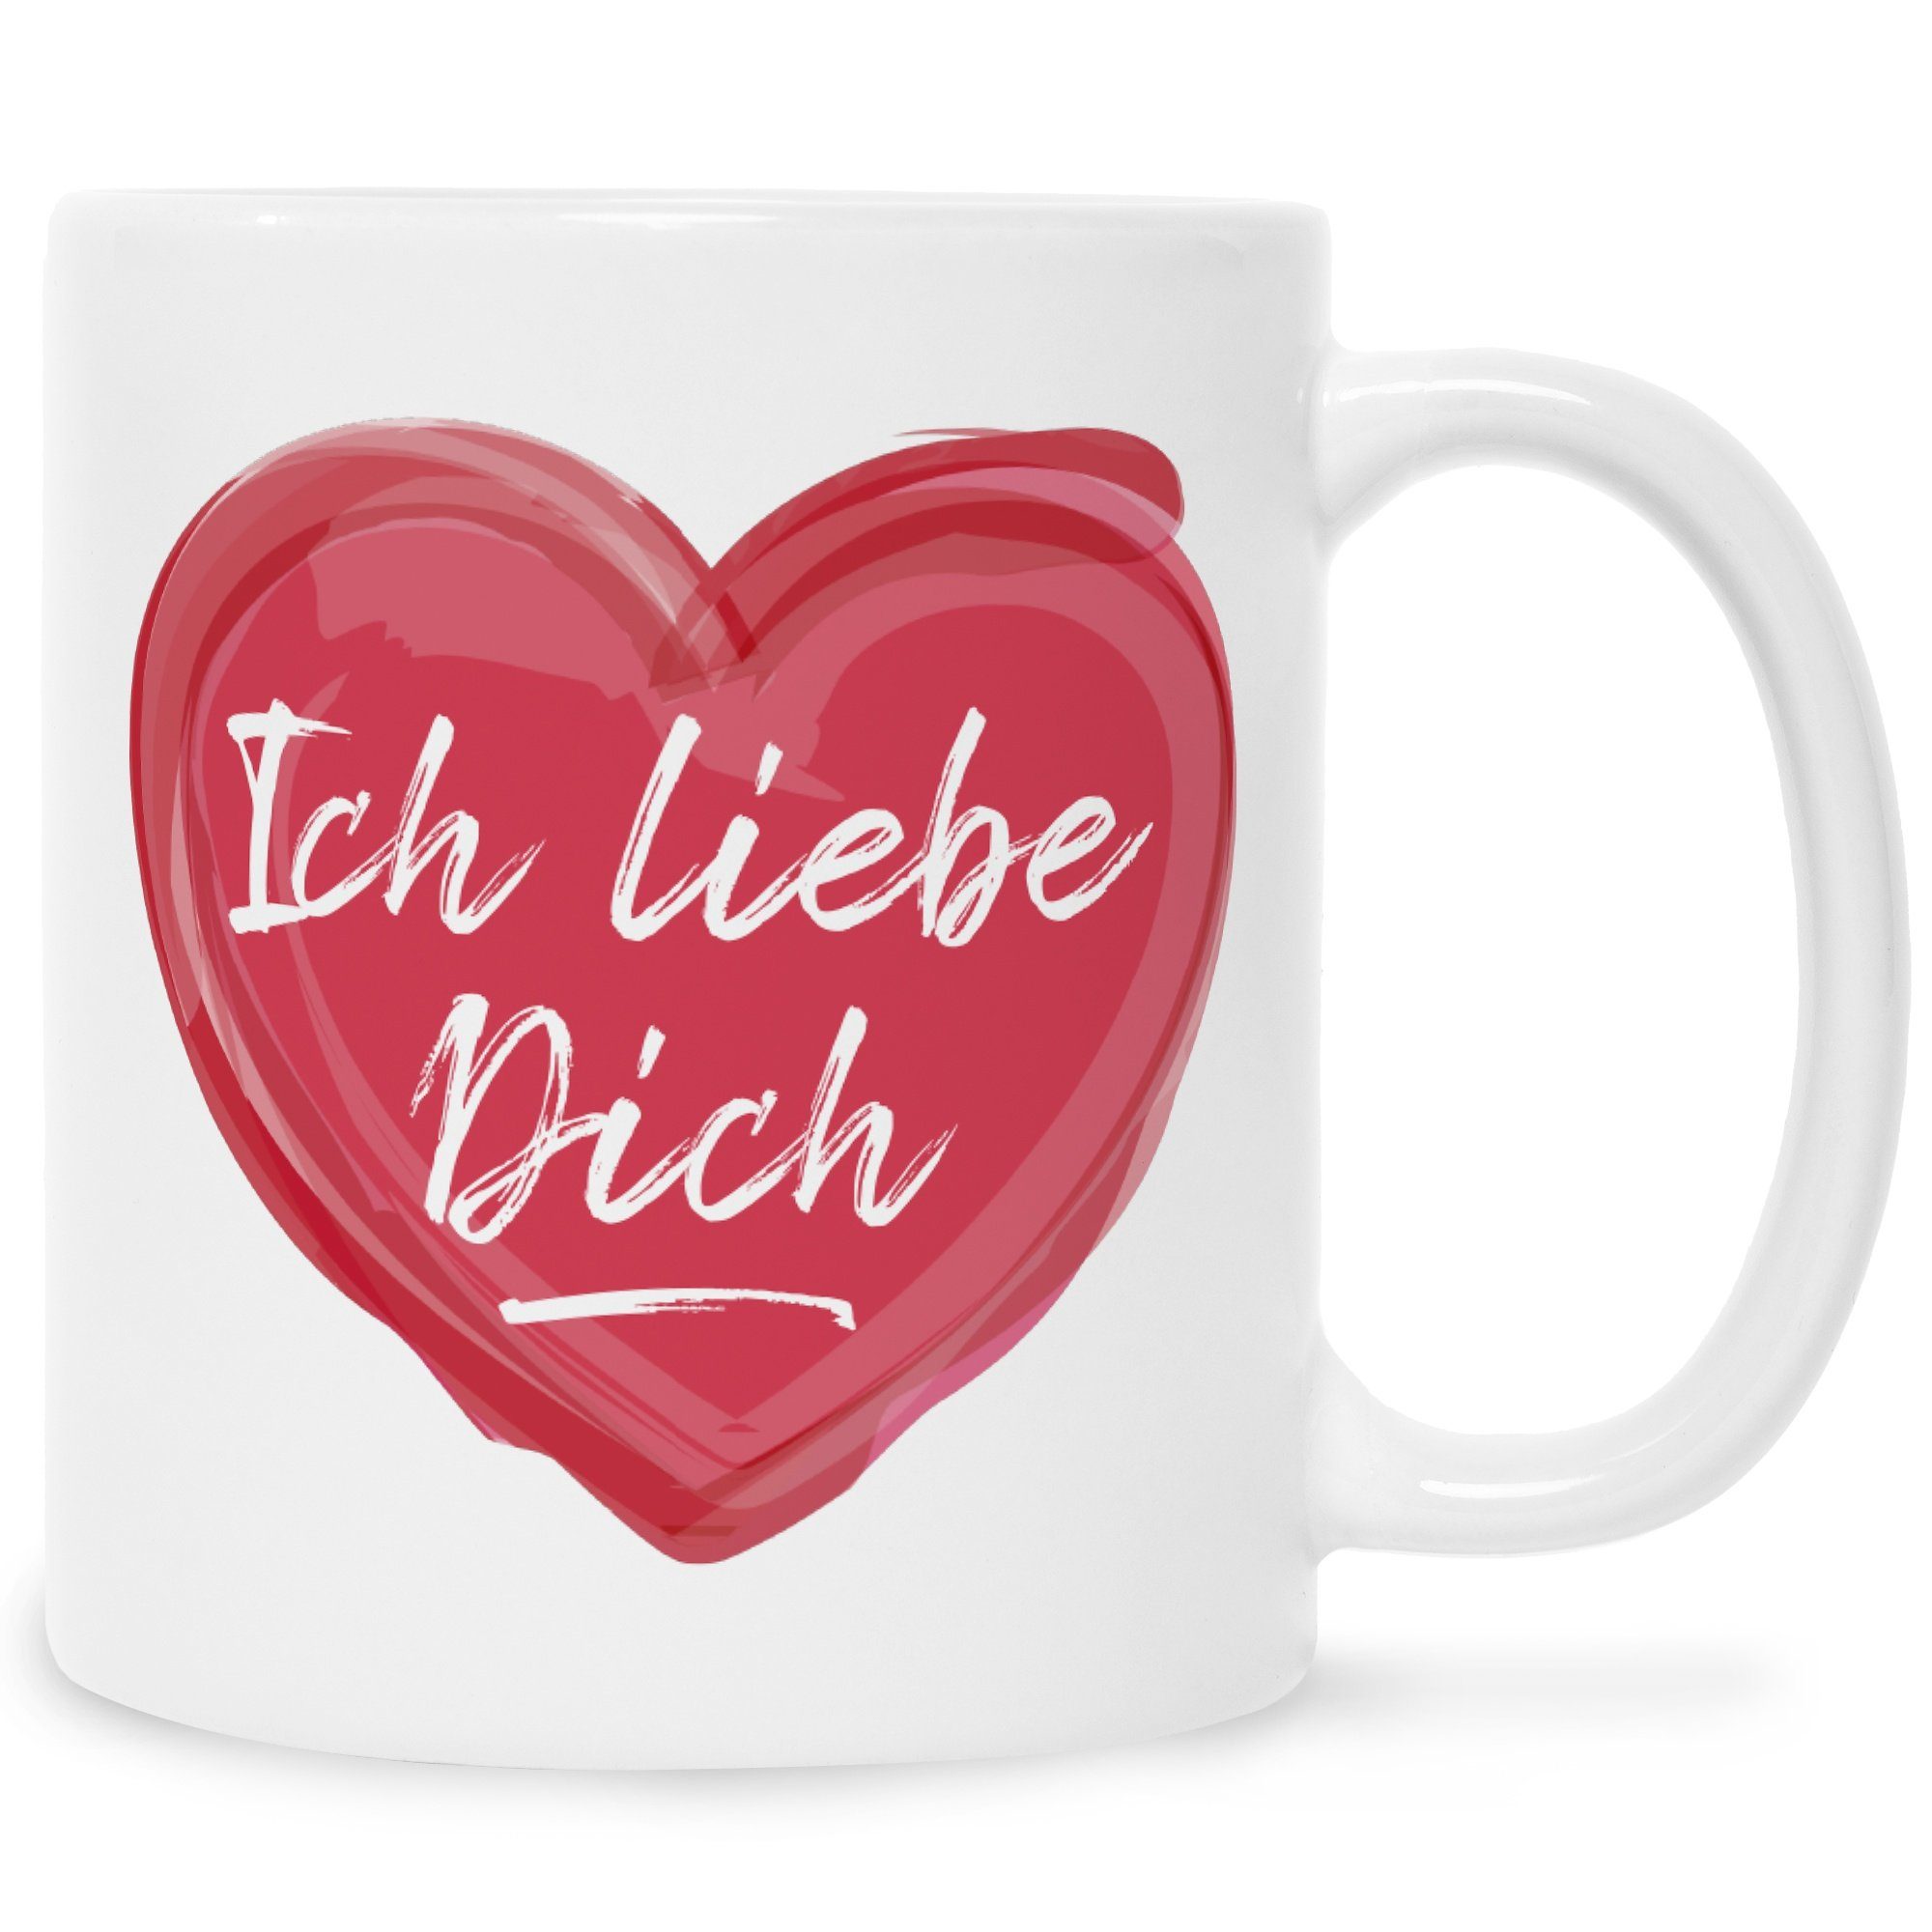 GRAVURZEILE Tasse Bedruckte Tasse mit Spruch - Ich liebe dich, Geschenke für Sie & Ihn zum Valentinstag - Geschenk für Pärchen Weiß